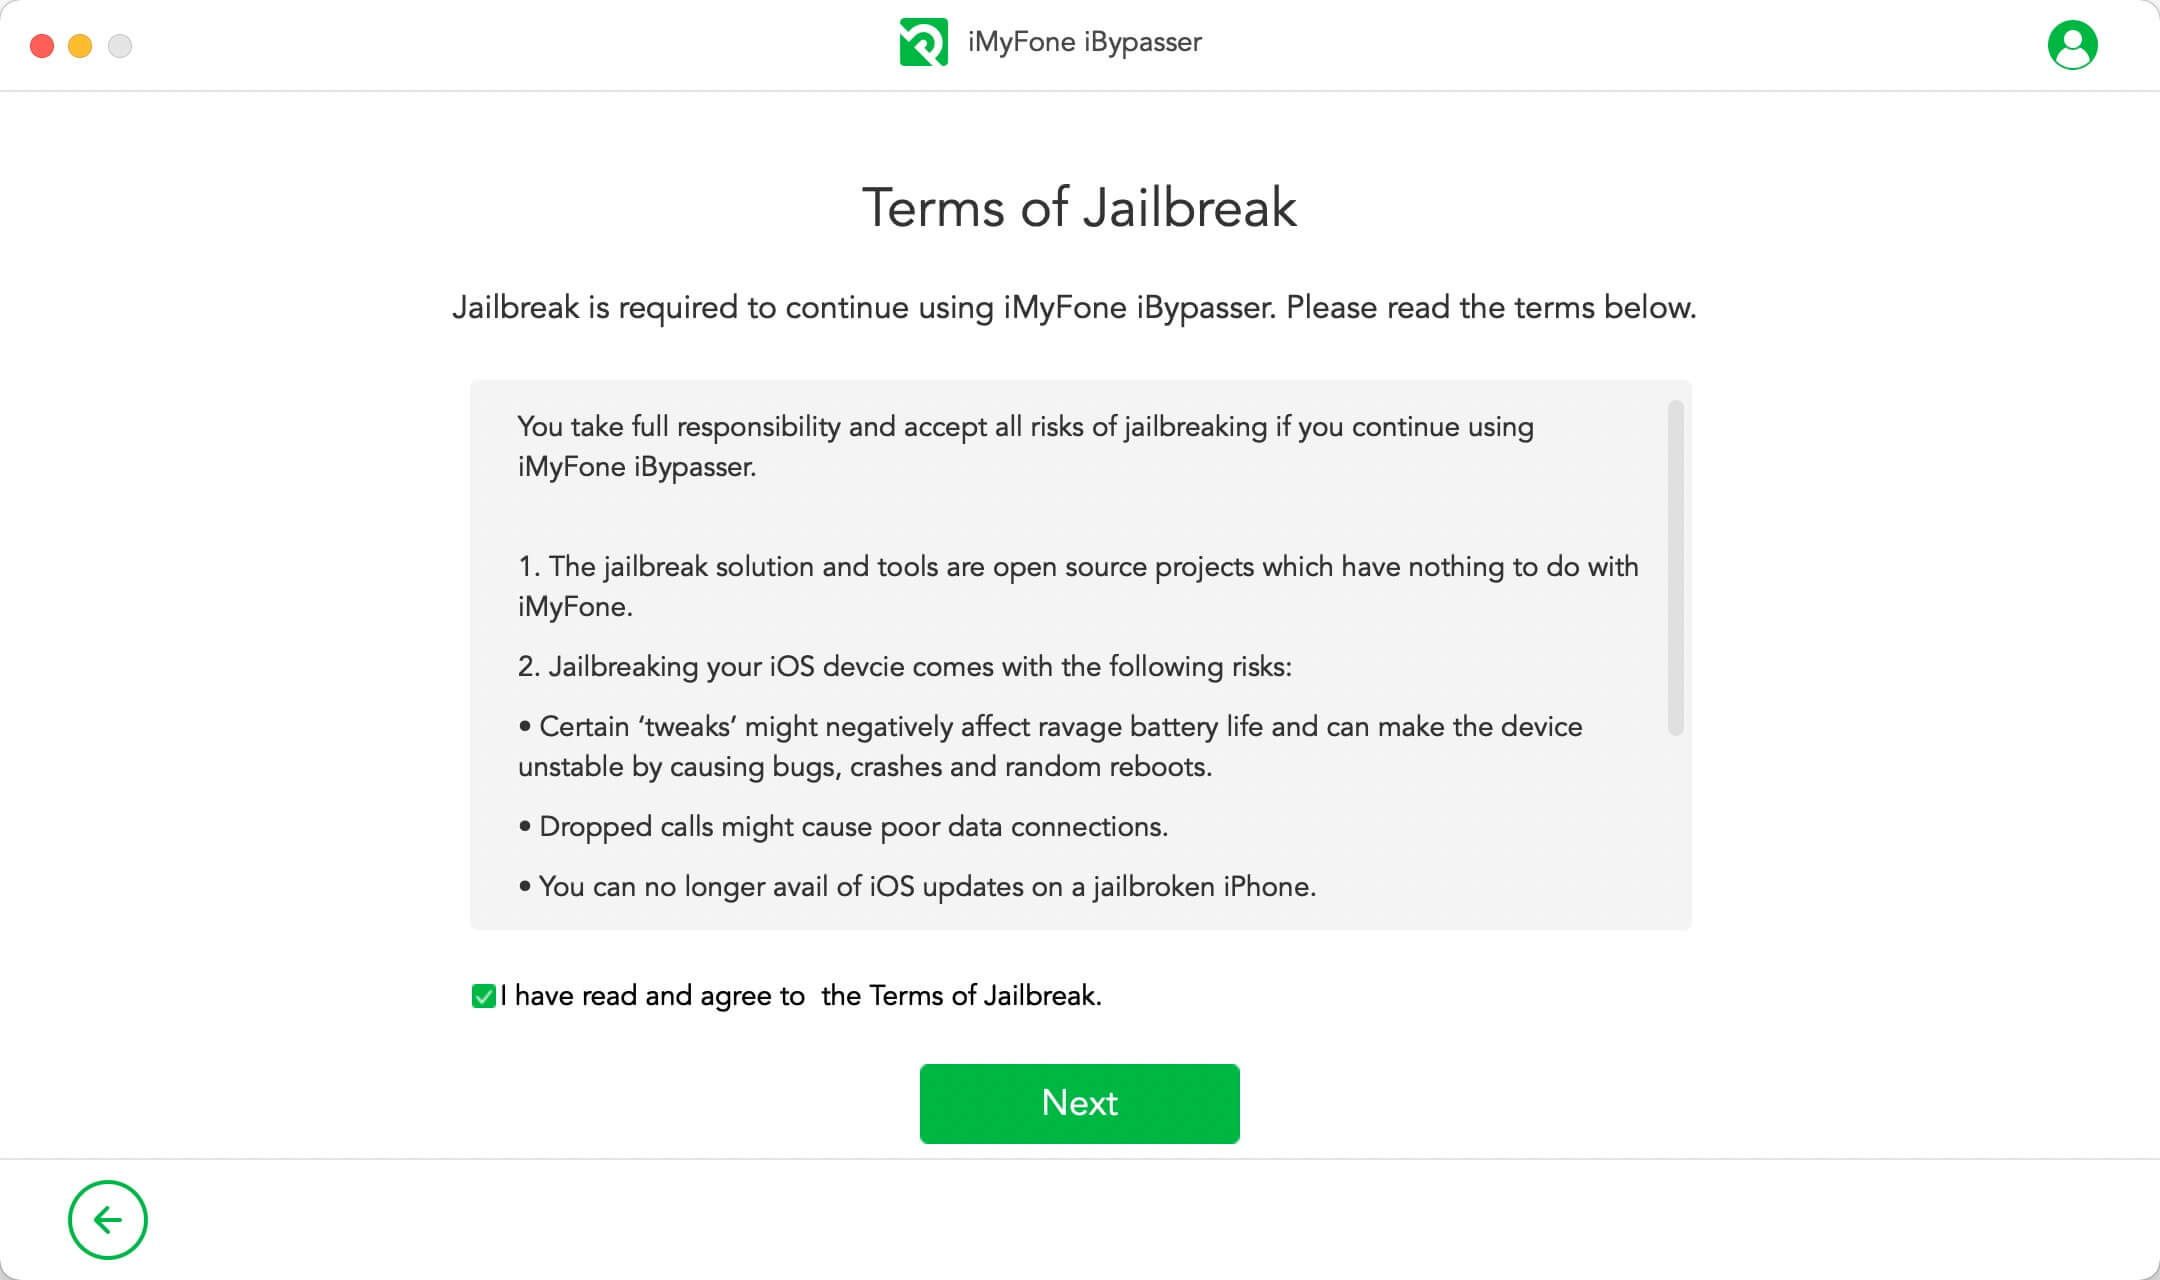 Terms of jailbreak